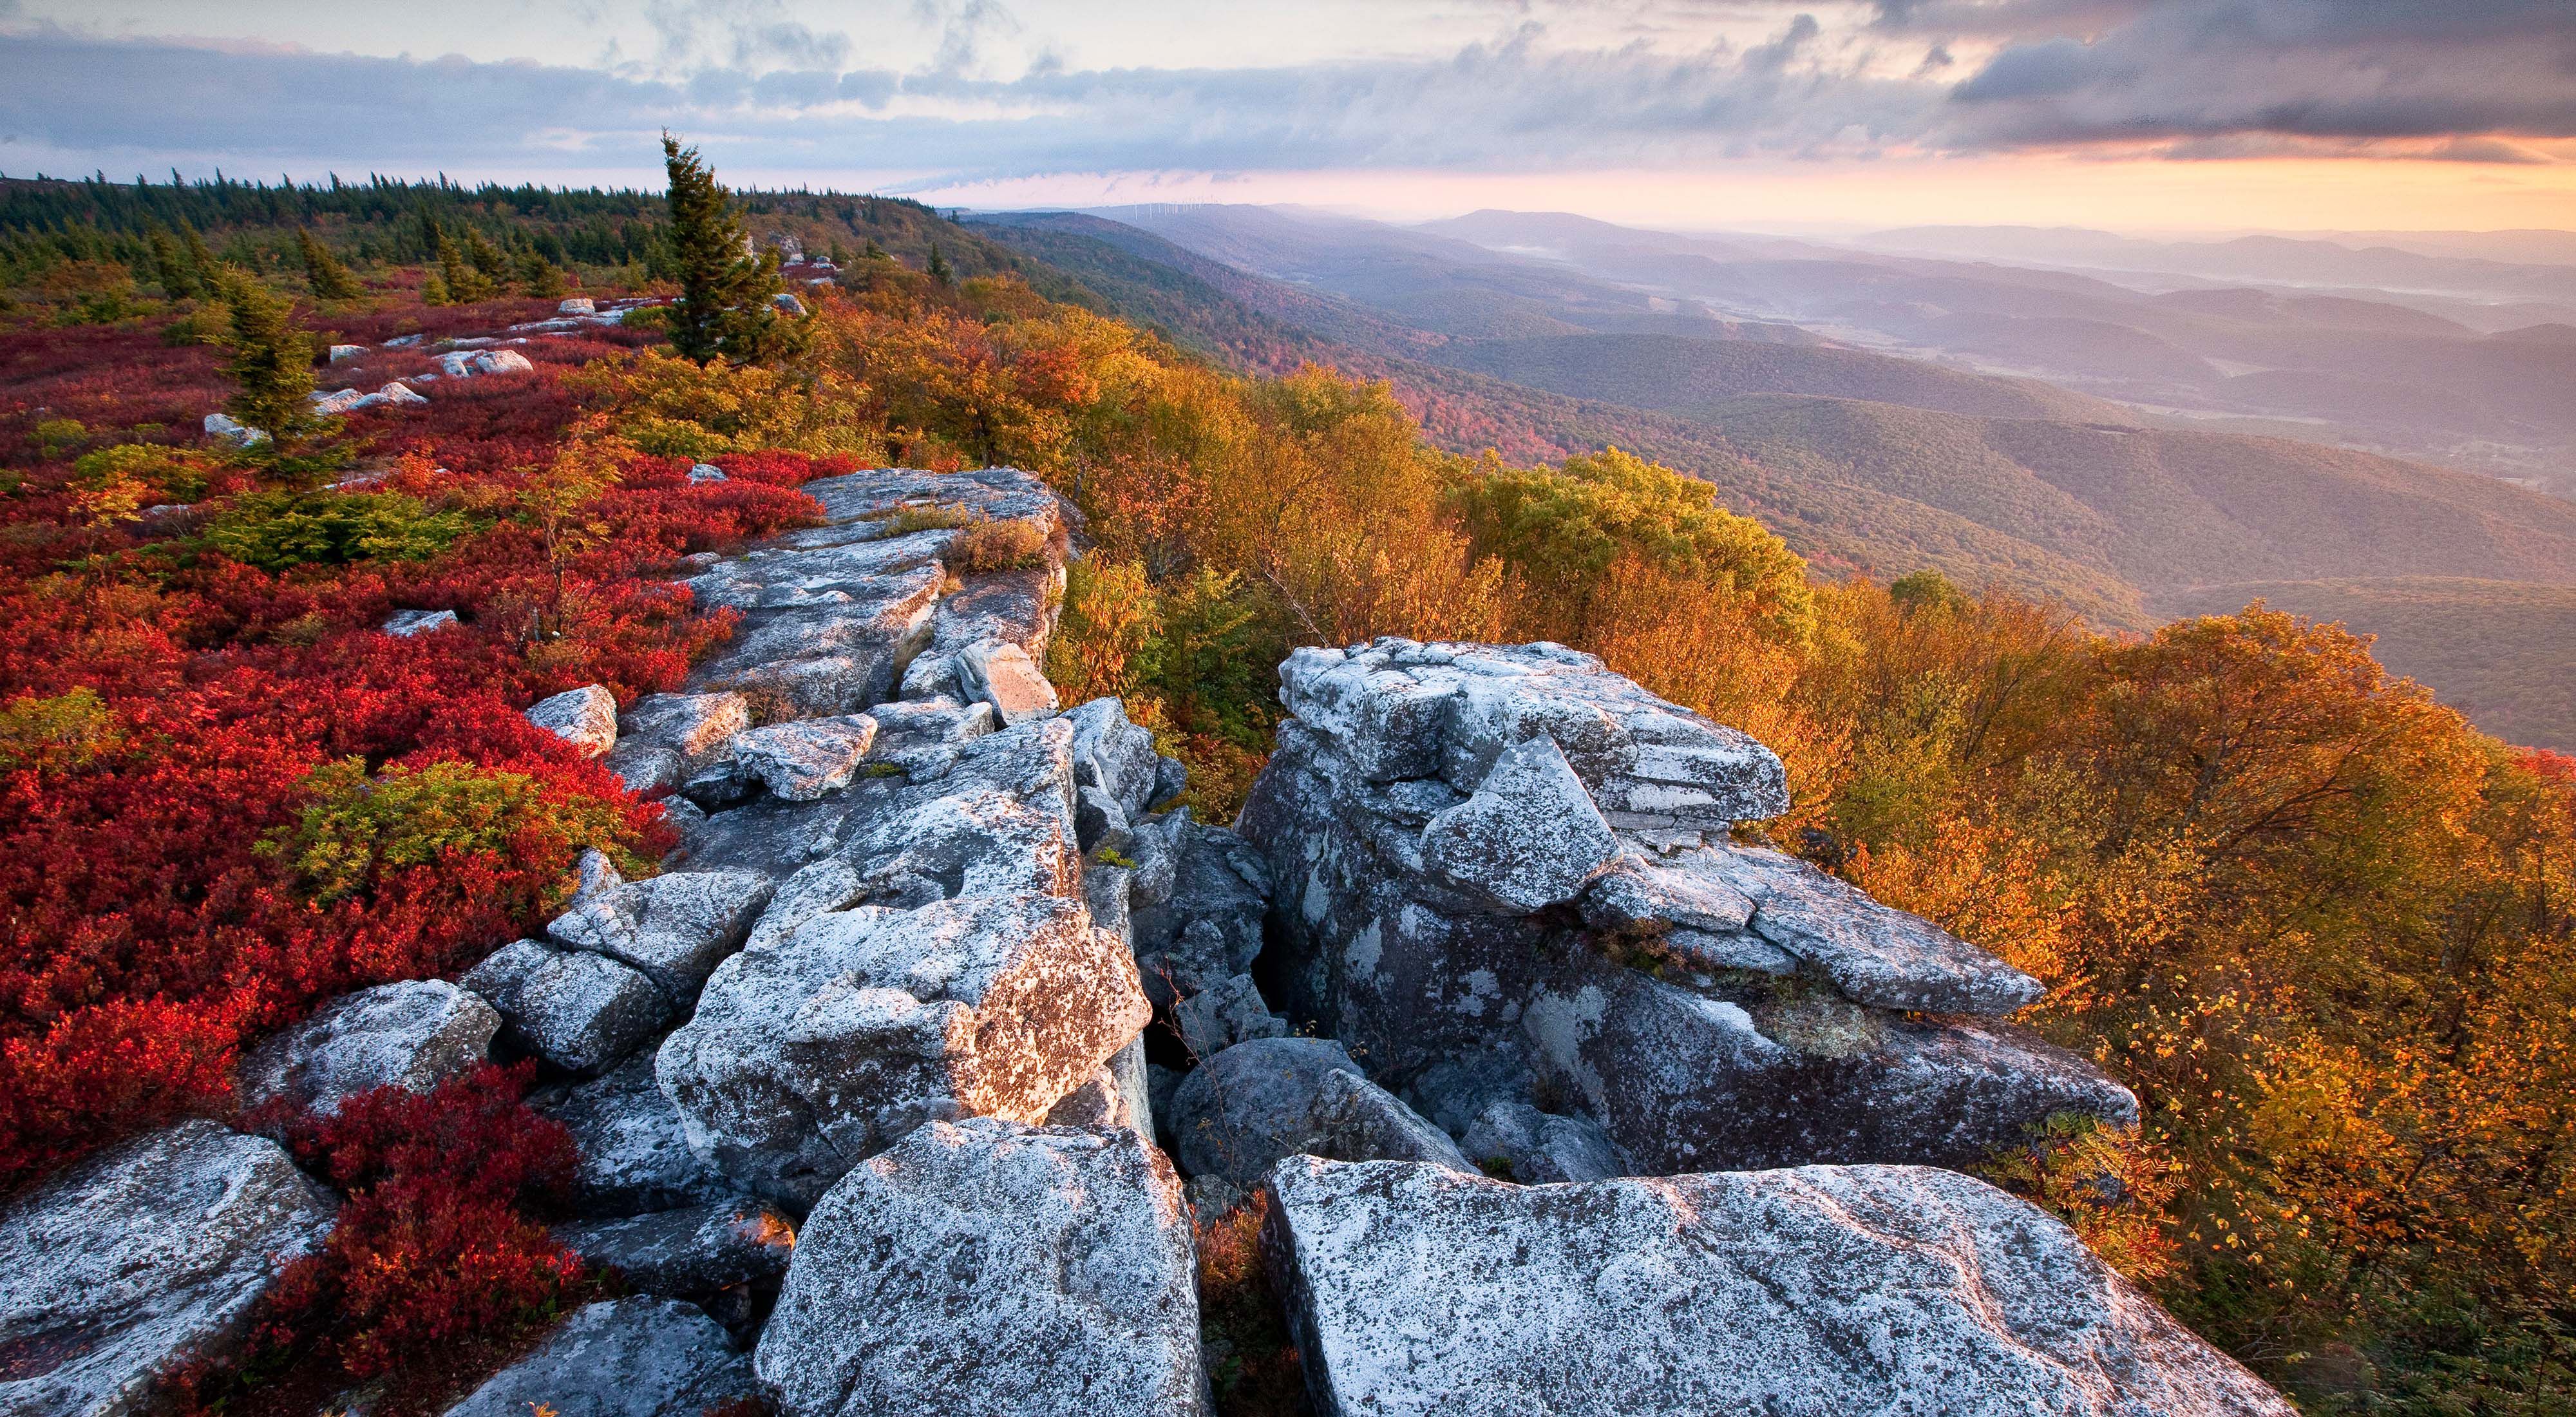 Autumn color atop a rocky mountain ridge in West Virginia.